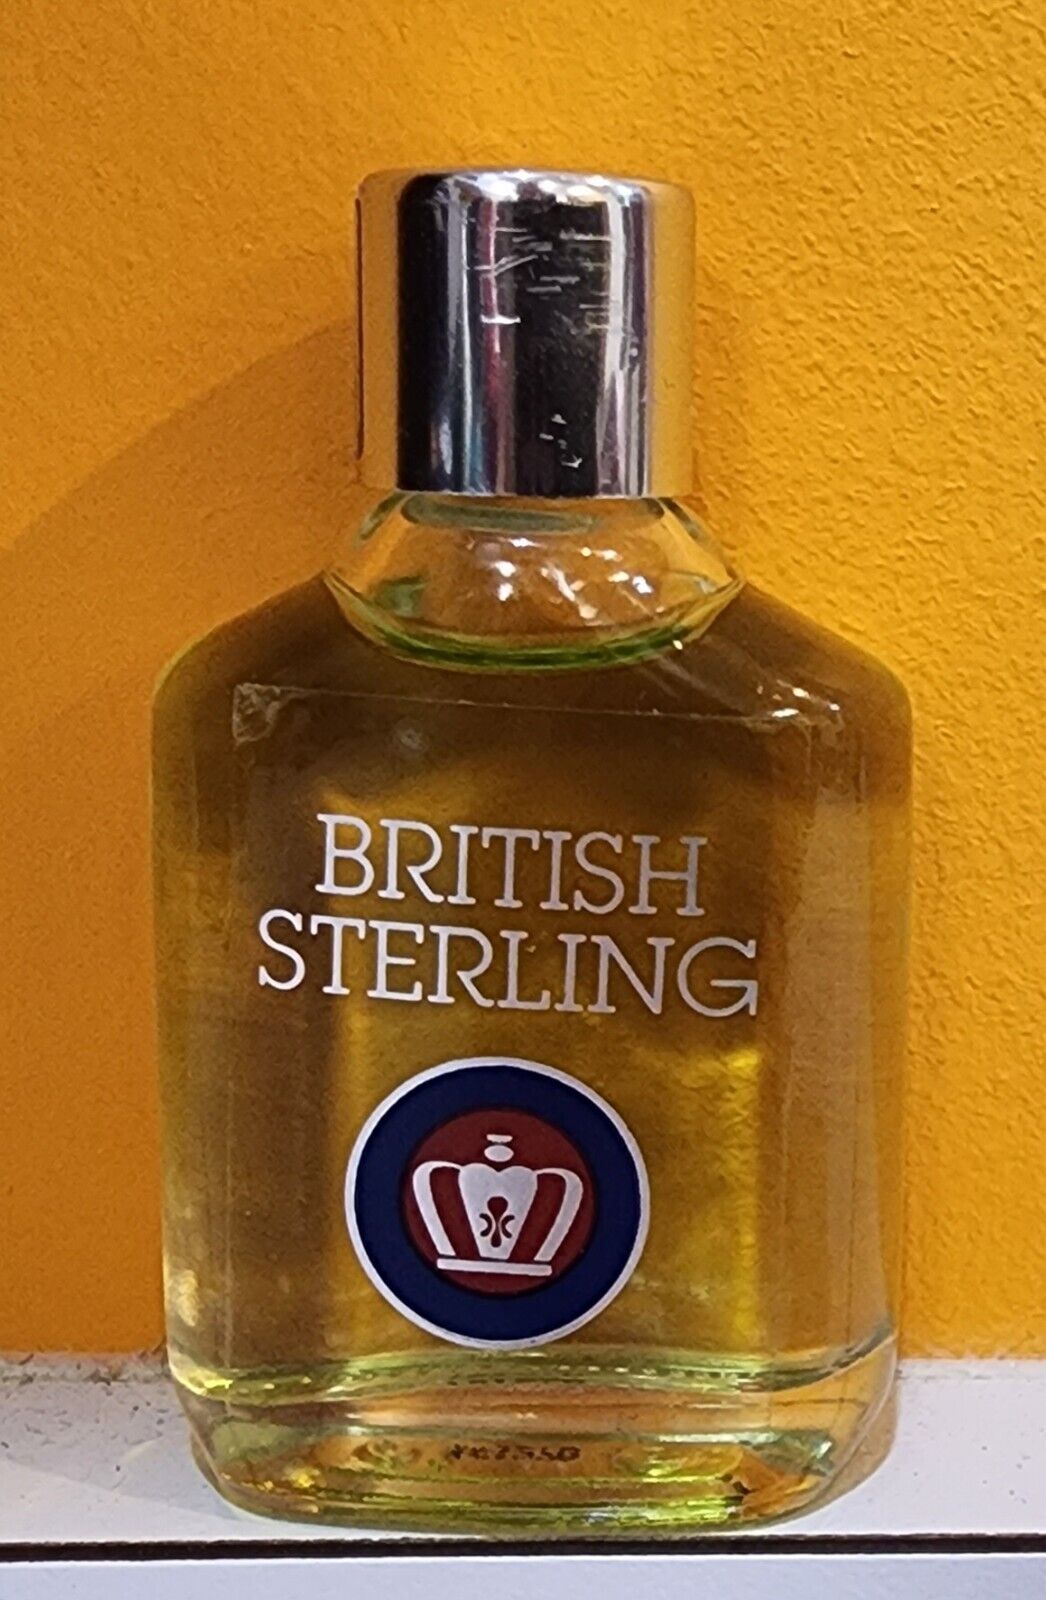 British Sterling Cologne For Men 0.5 oz Glass Bottle